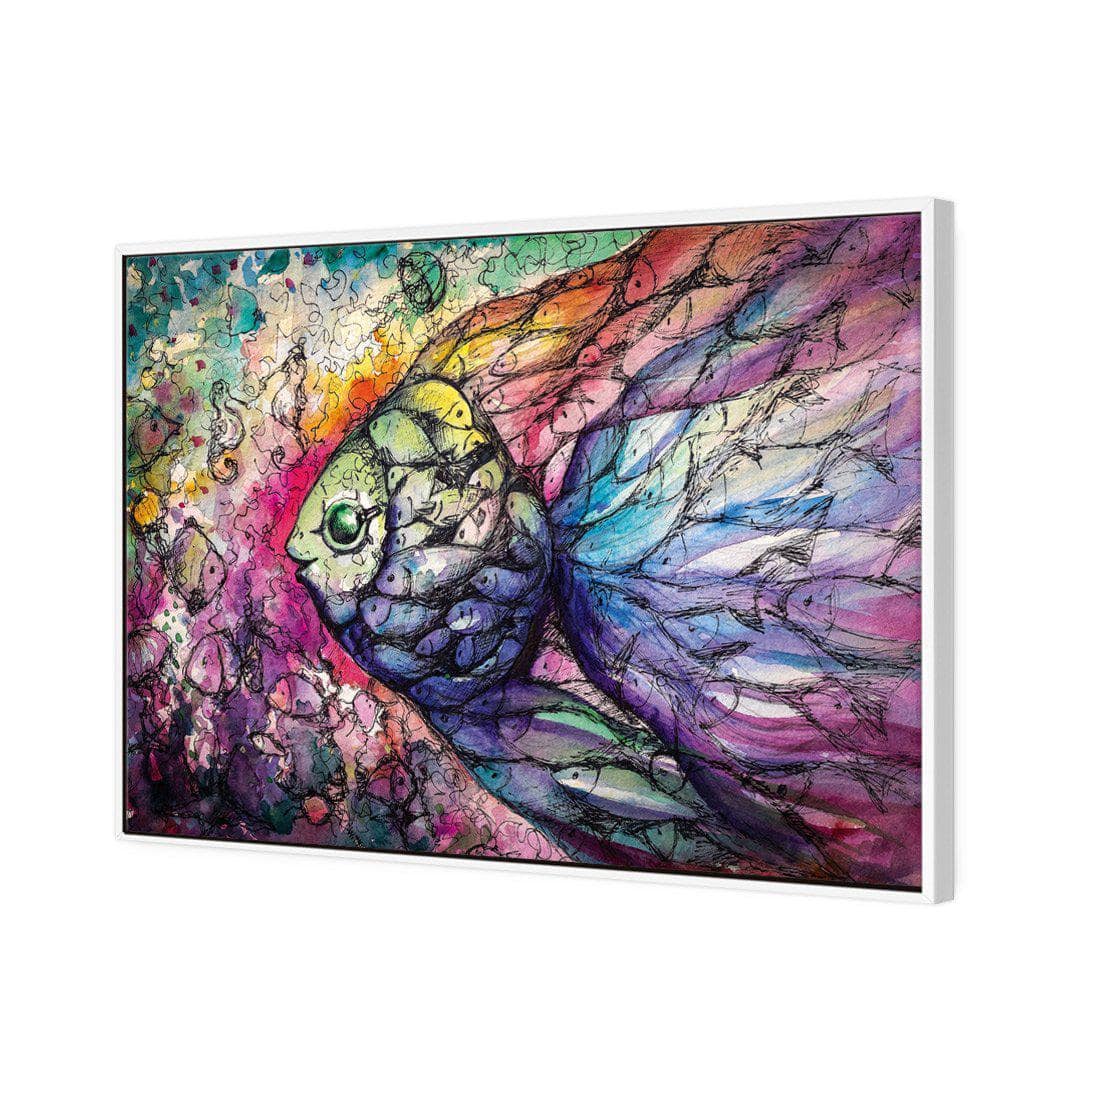 Scribblefish Canvas Art-Canvas-Wall Art Designs-45x30cm-Canvas - White Frame-Wall Art Designs